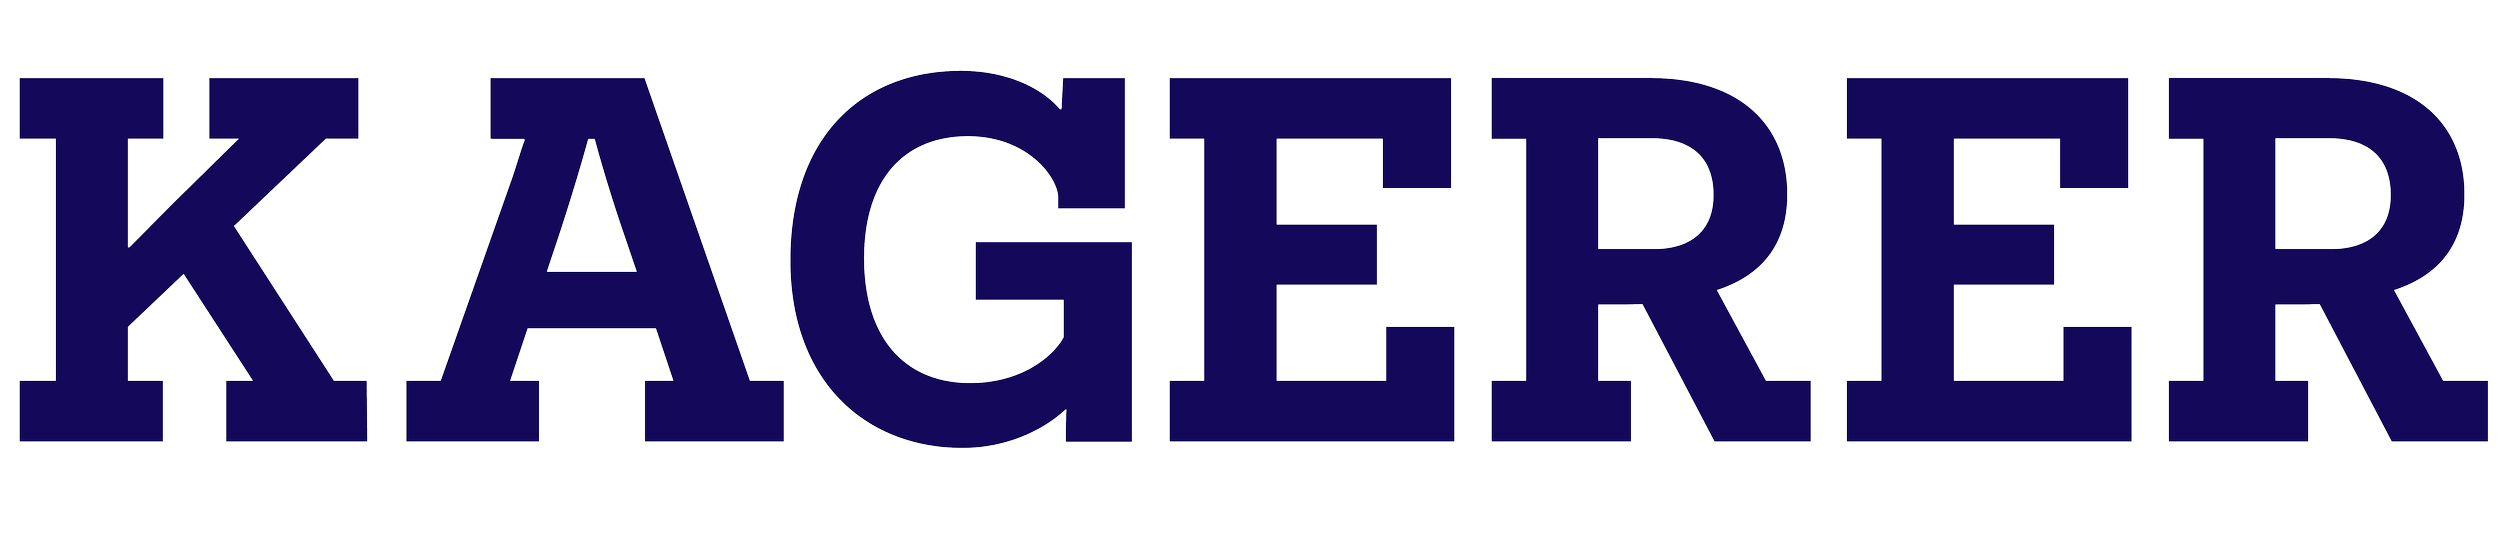 logo-kagerer